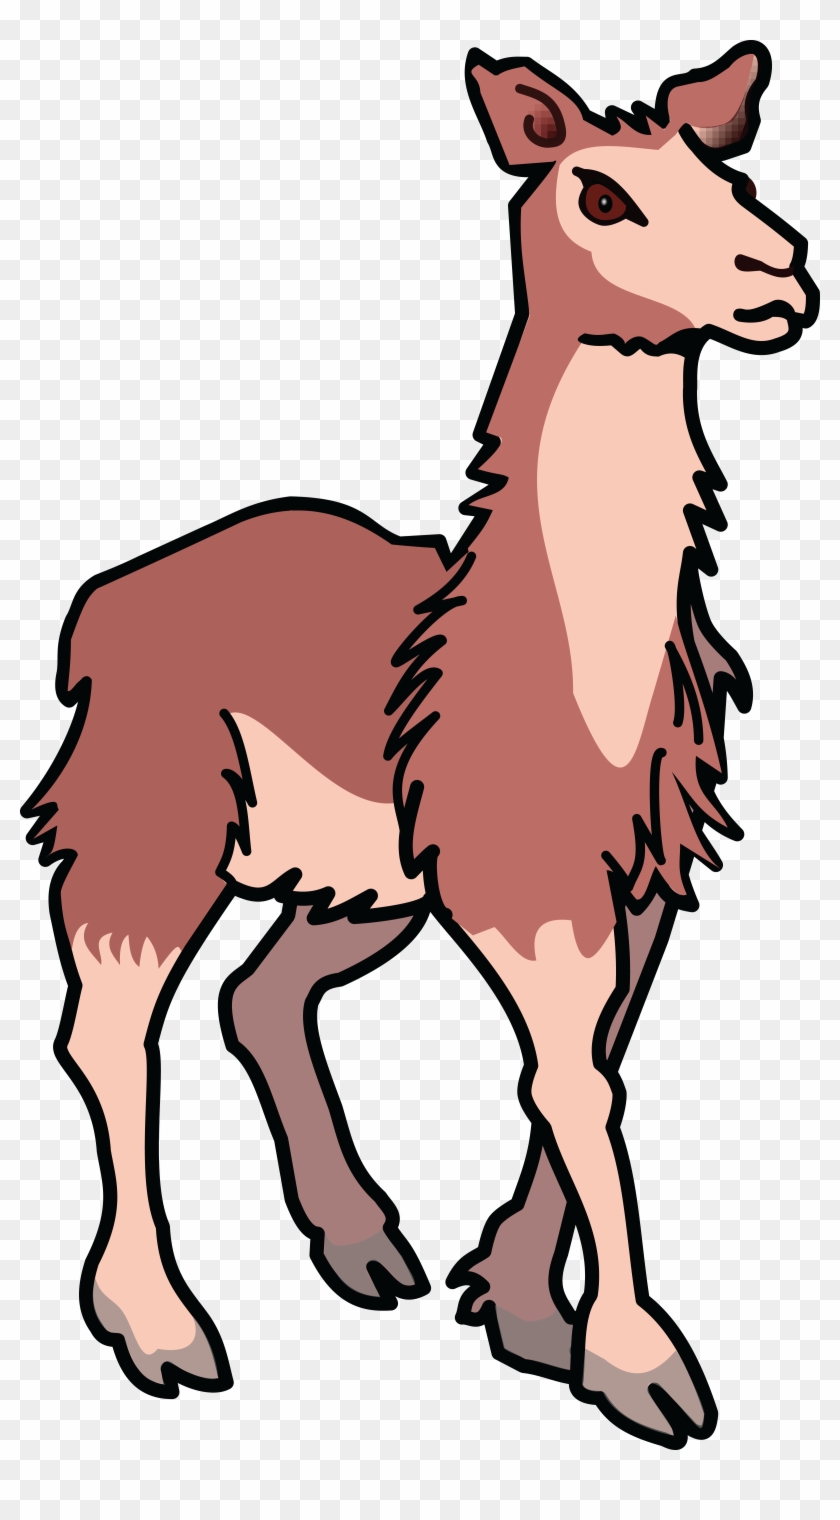 Free Clipart Of A Llama - Clip Art Lama #52326